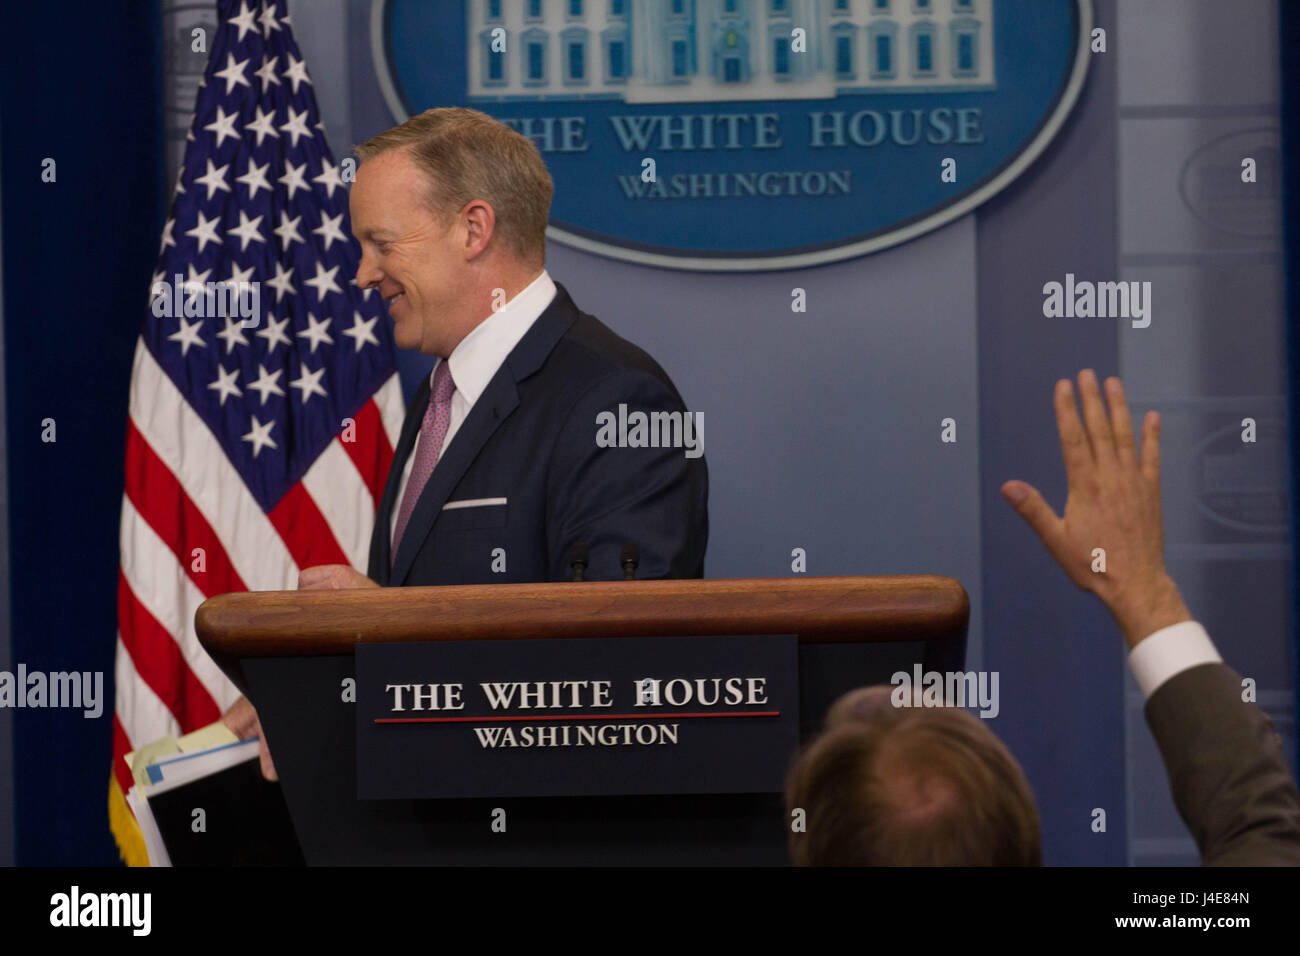 Washington DC, USA. 12 mai, 2017. Secrétaire de presse de la Maison Blanche Sean Spicer rencontre la presse pendant le briefing, vendredi 12 mai, 2017. Crédit : Michael Candelori/Alamy Live News Banque D'Images